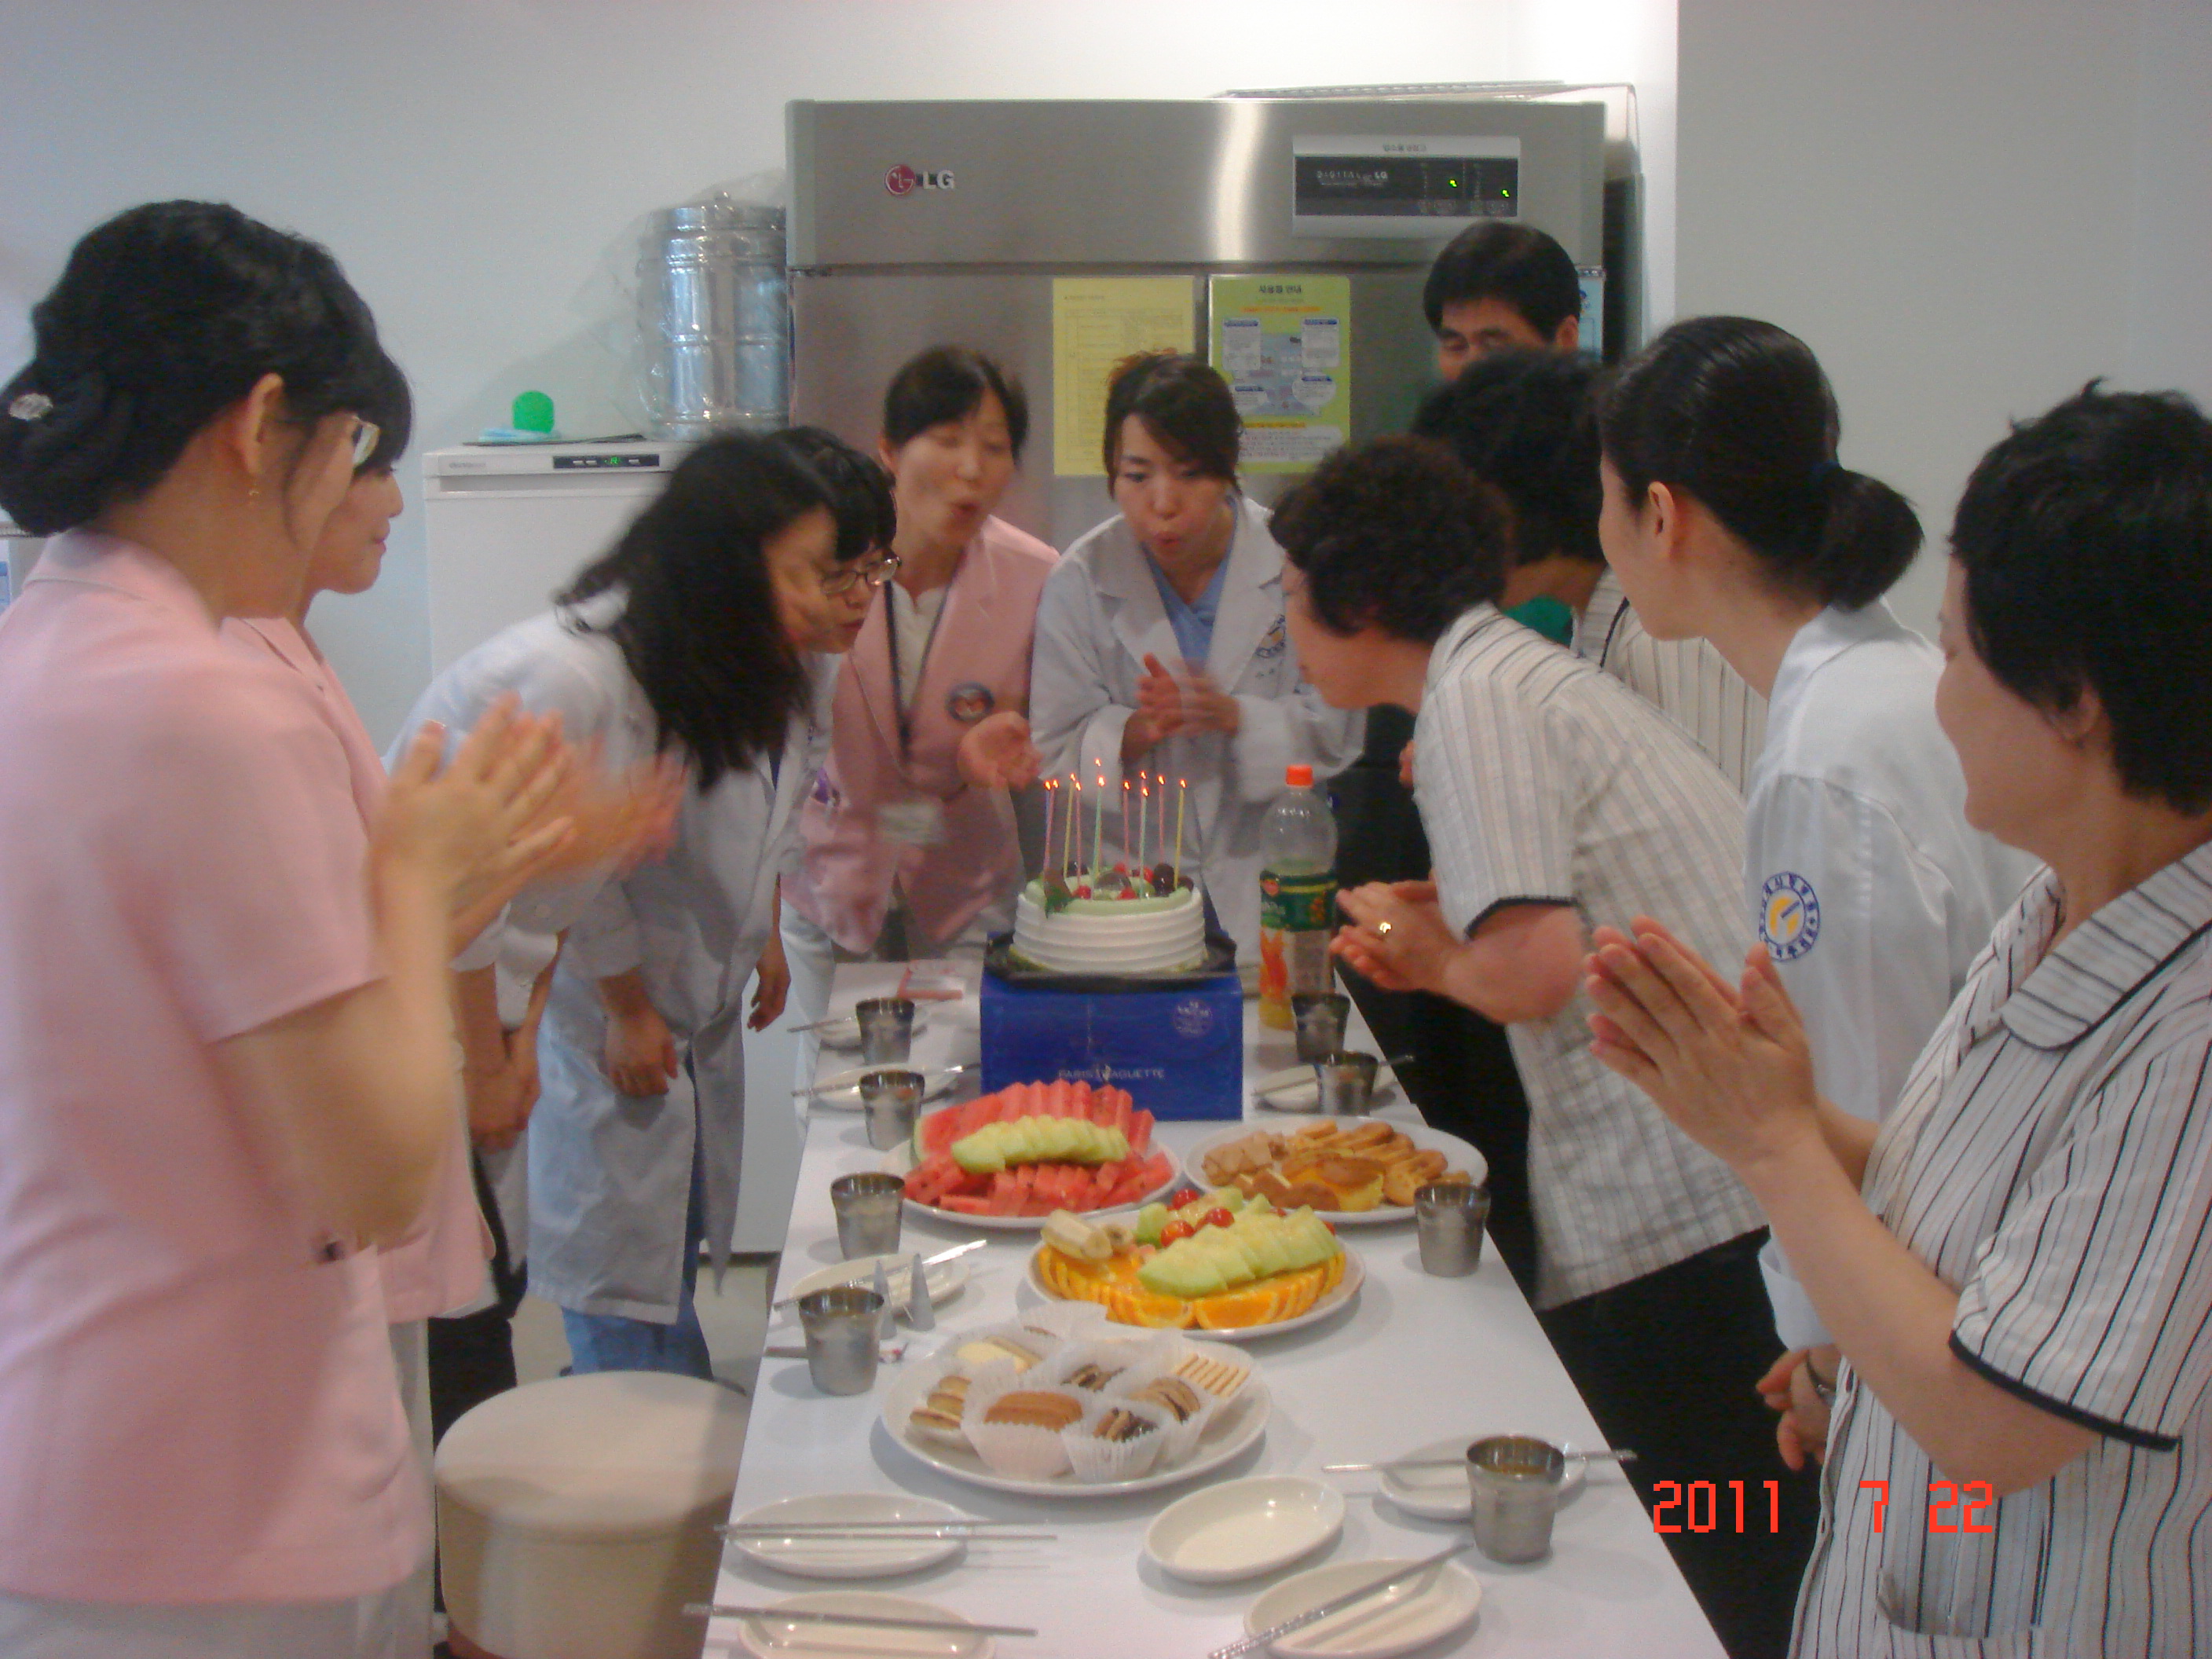 2011년 7월 22일 - 강북점 생일자 파티 게시글의 3번째 첨부파일입니다.